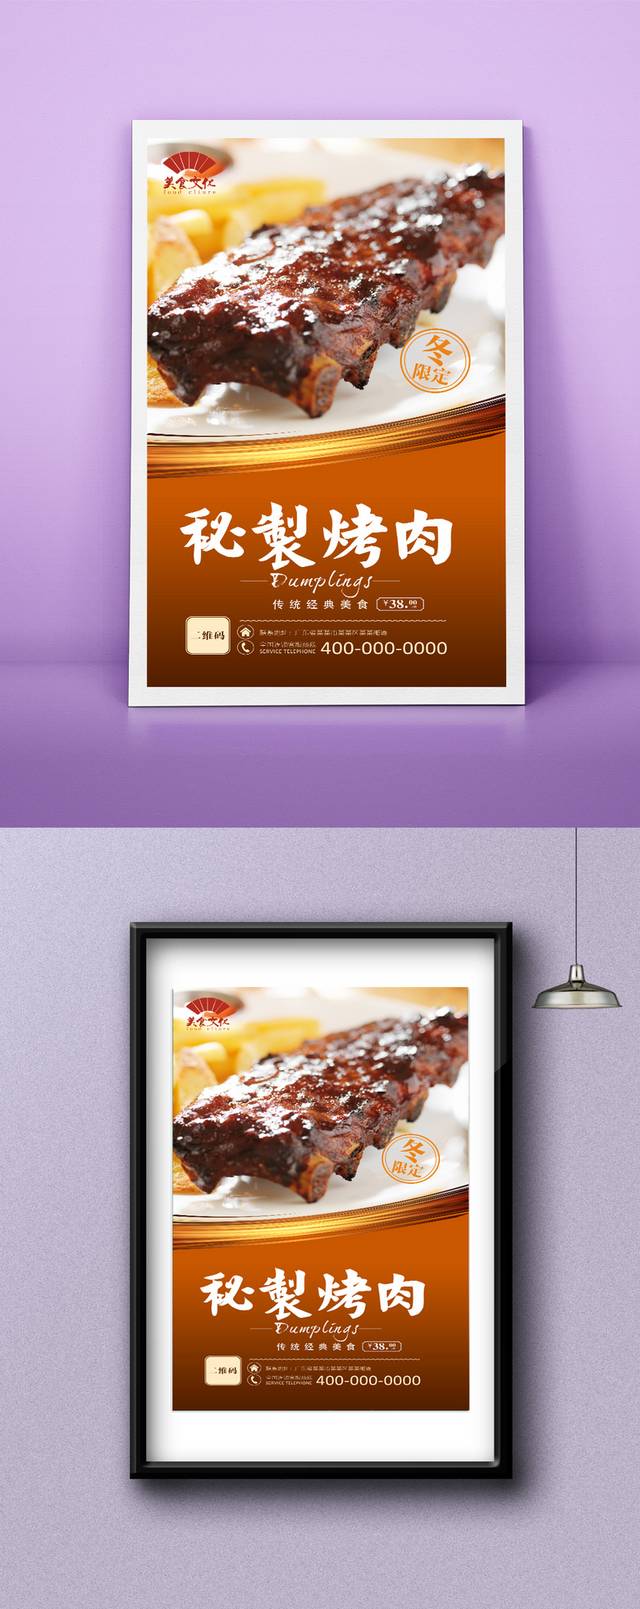 烤肉宣传海报设计